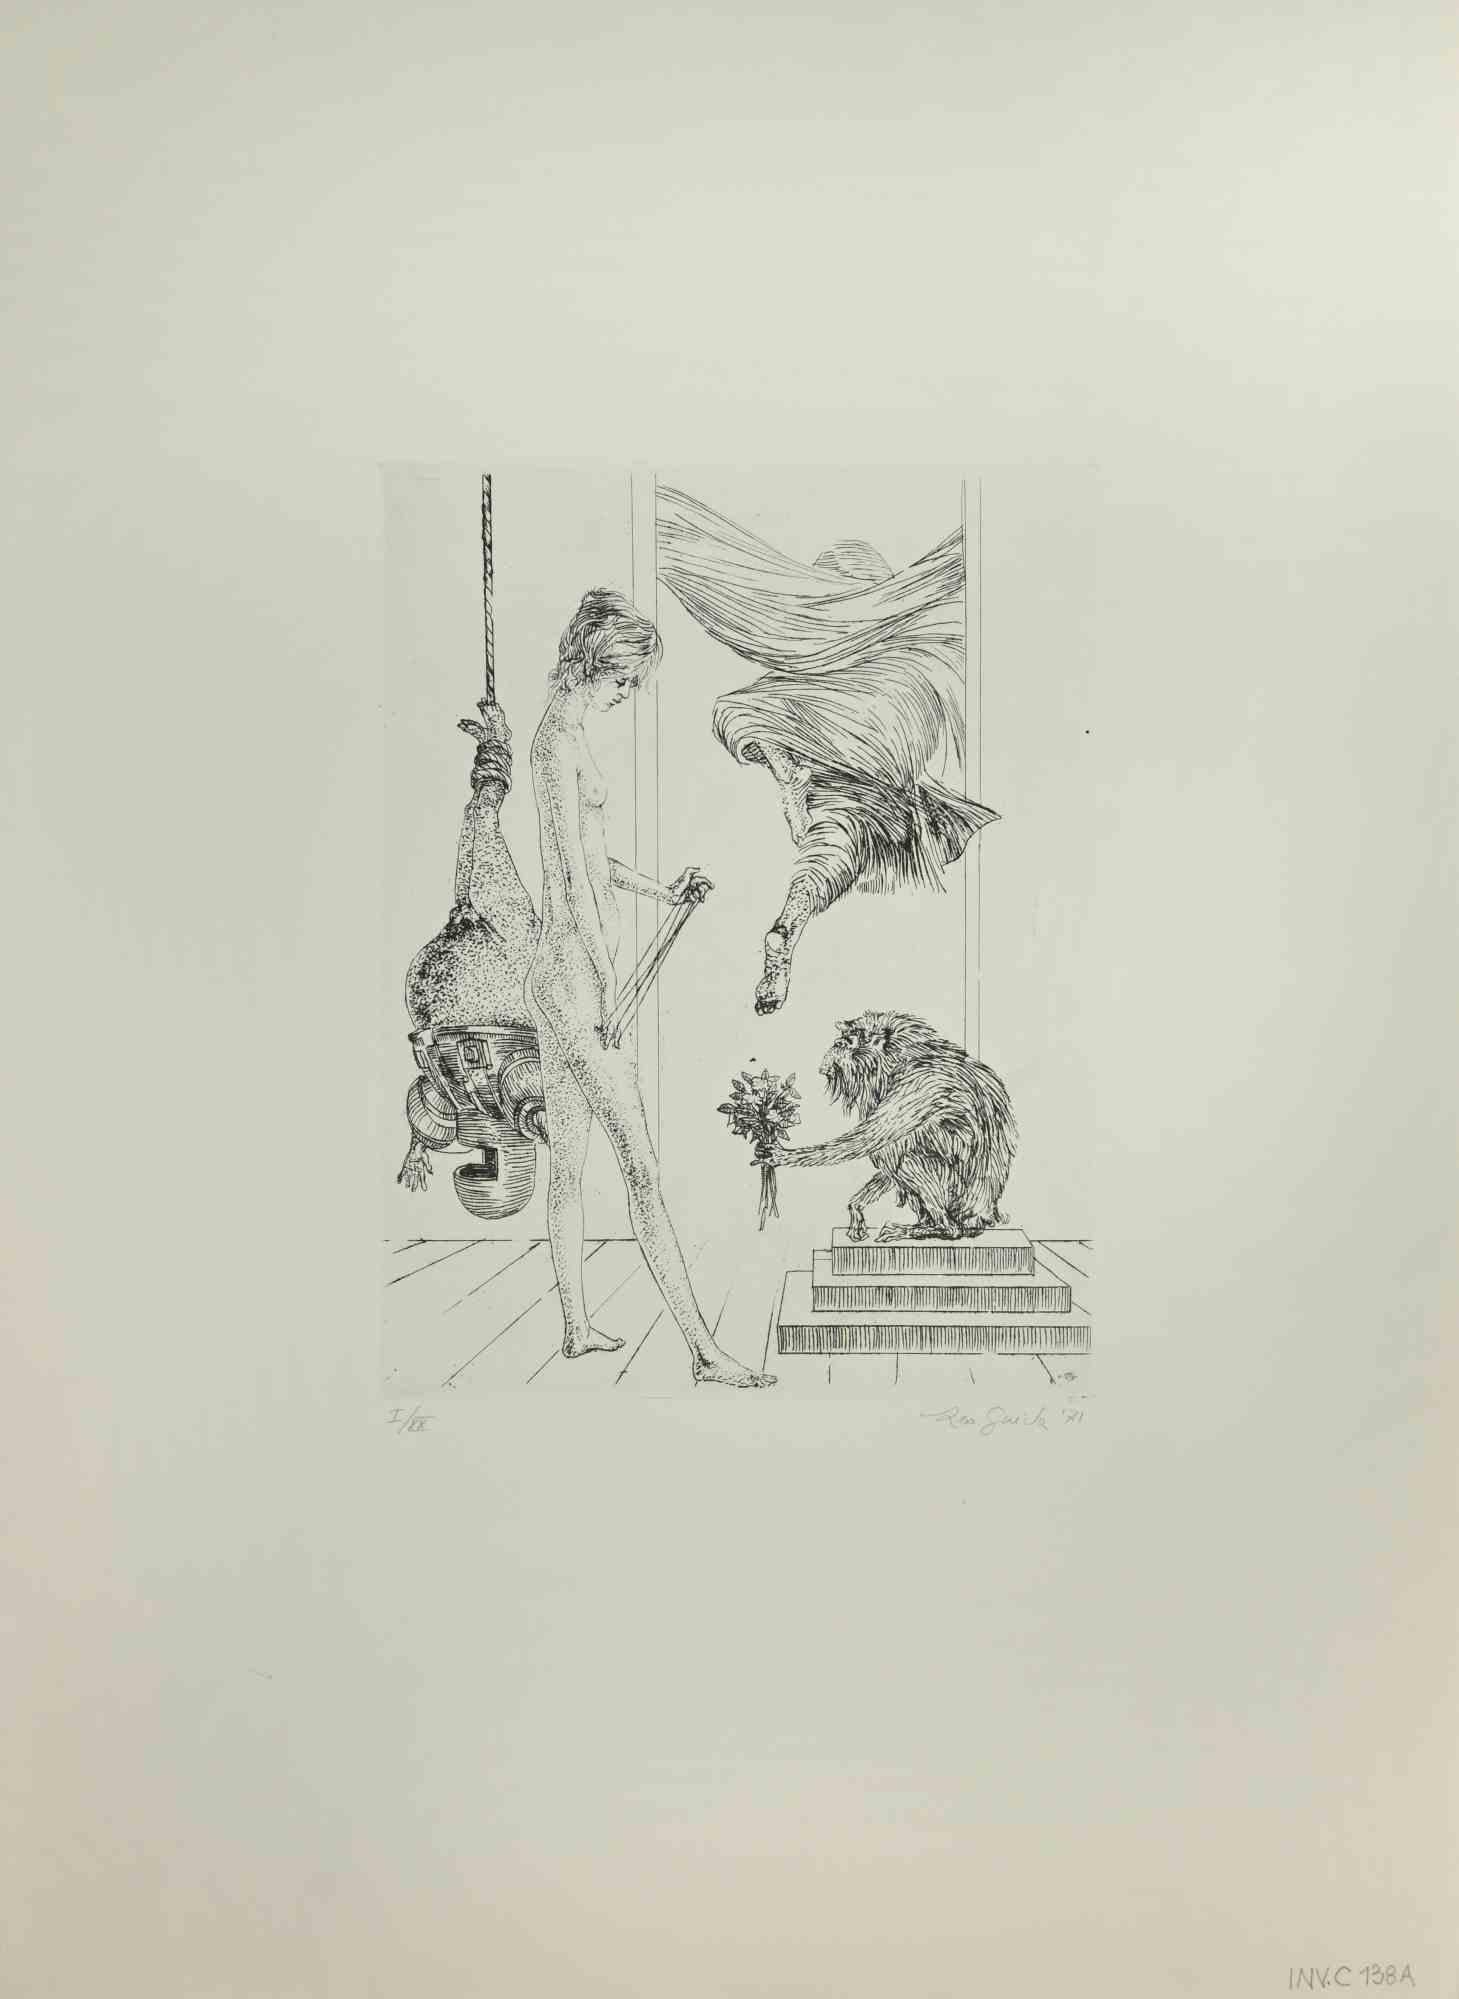 Frau mit Affe ist ein Kunstwerk von Leo Guida aus dem Jahr 1971. 

Radierung, 50 x 70 cm.

Ausgabe I/XX

Handsigniert und datiert am unteren rechten Rand.

Sehr gute Bedingungen